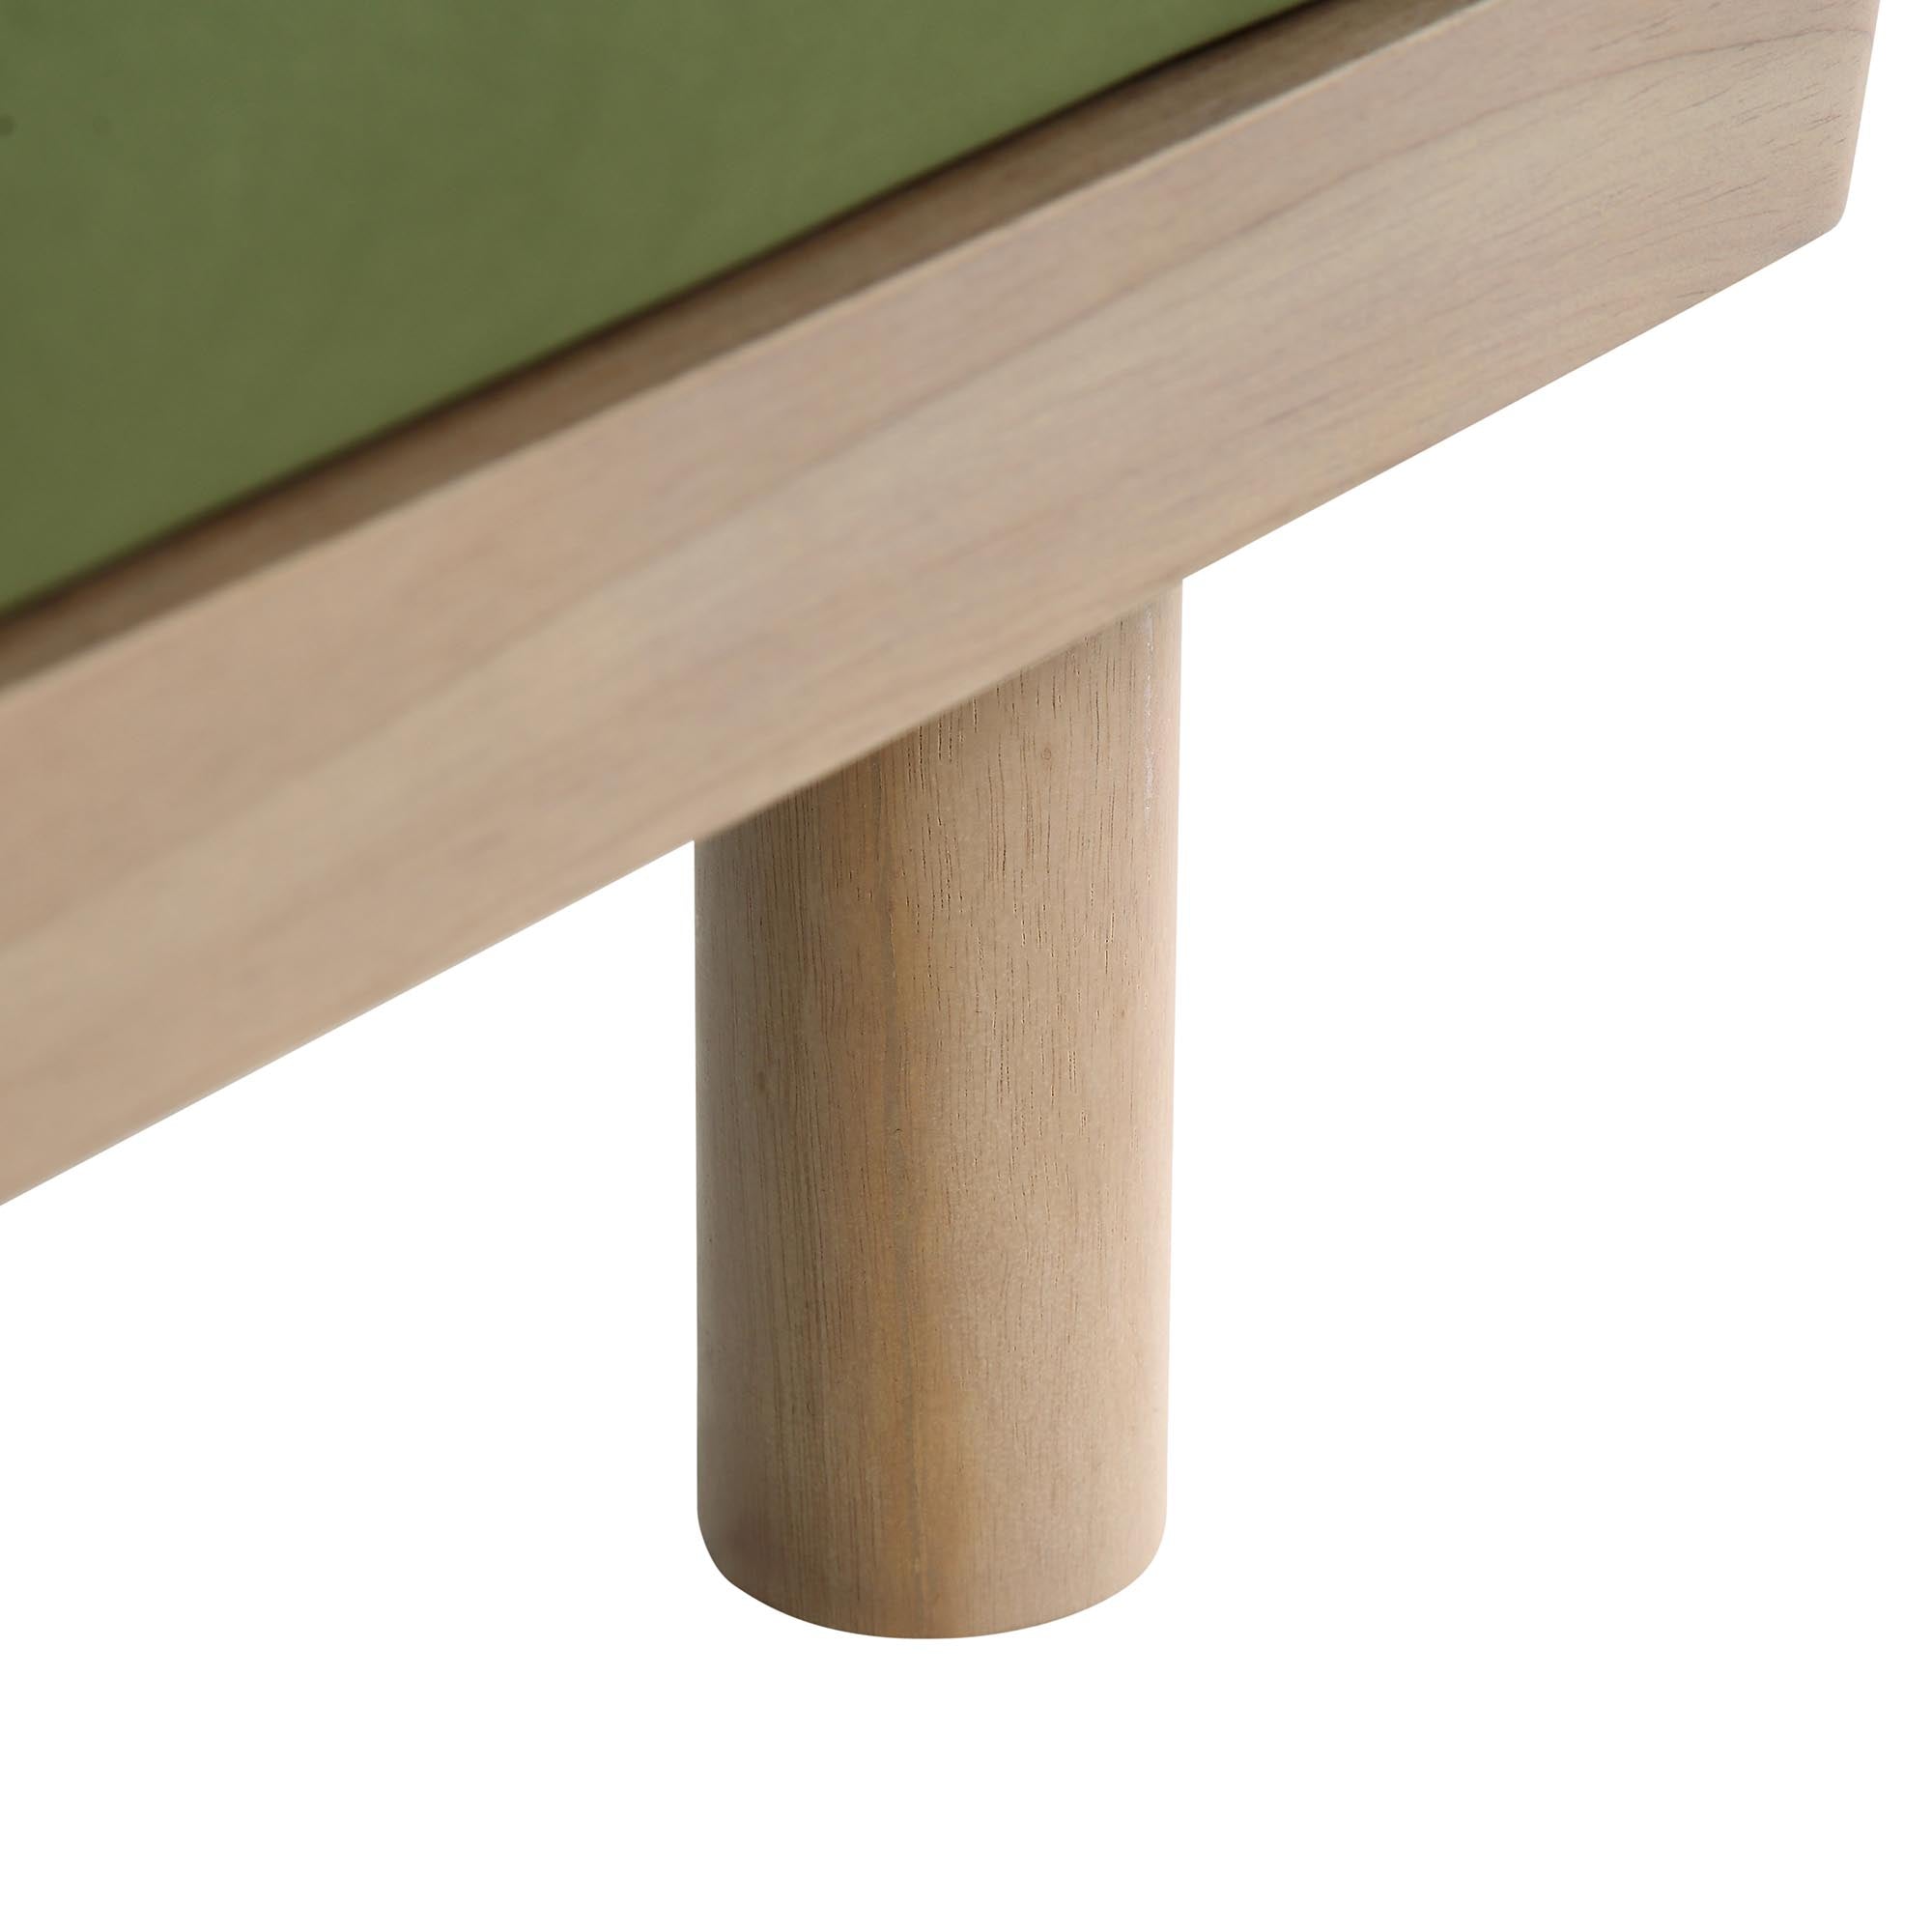 Timber Fern Green Velvet Sofa, Large 3-Seater Chaise Sofa Left Hand